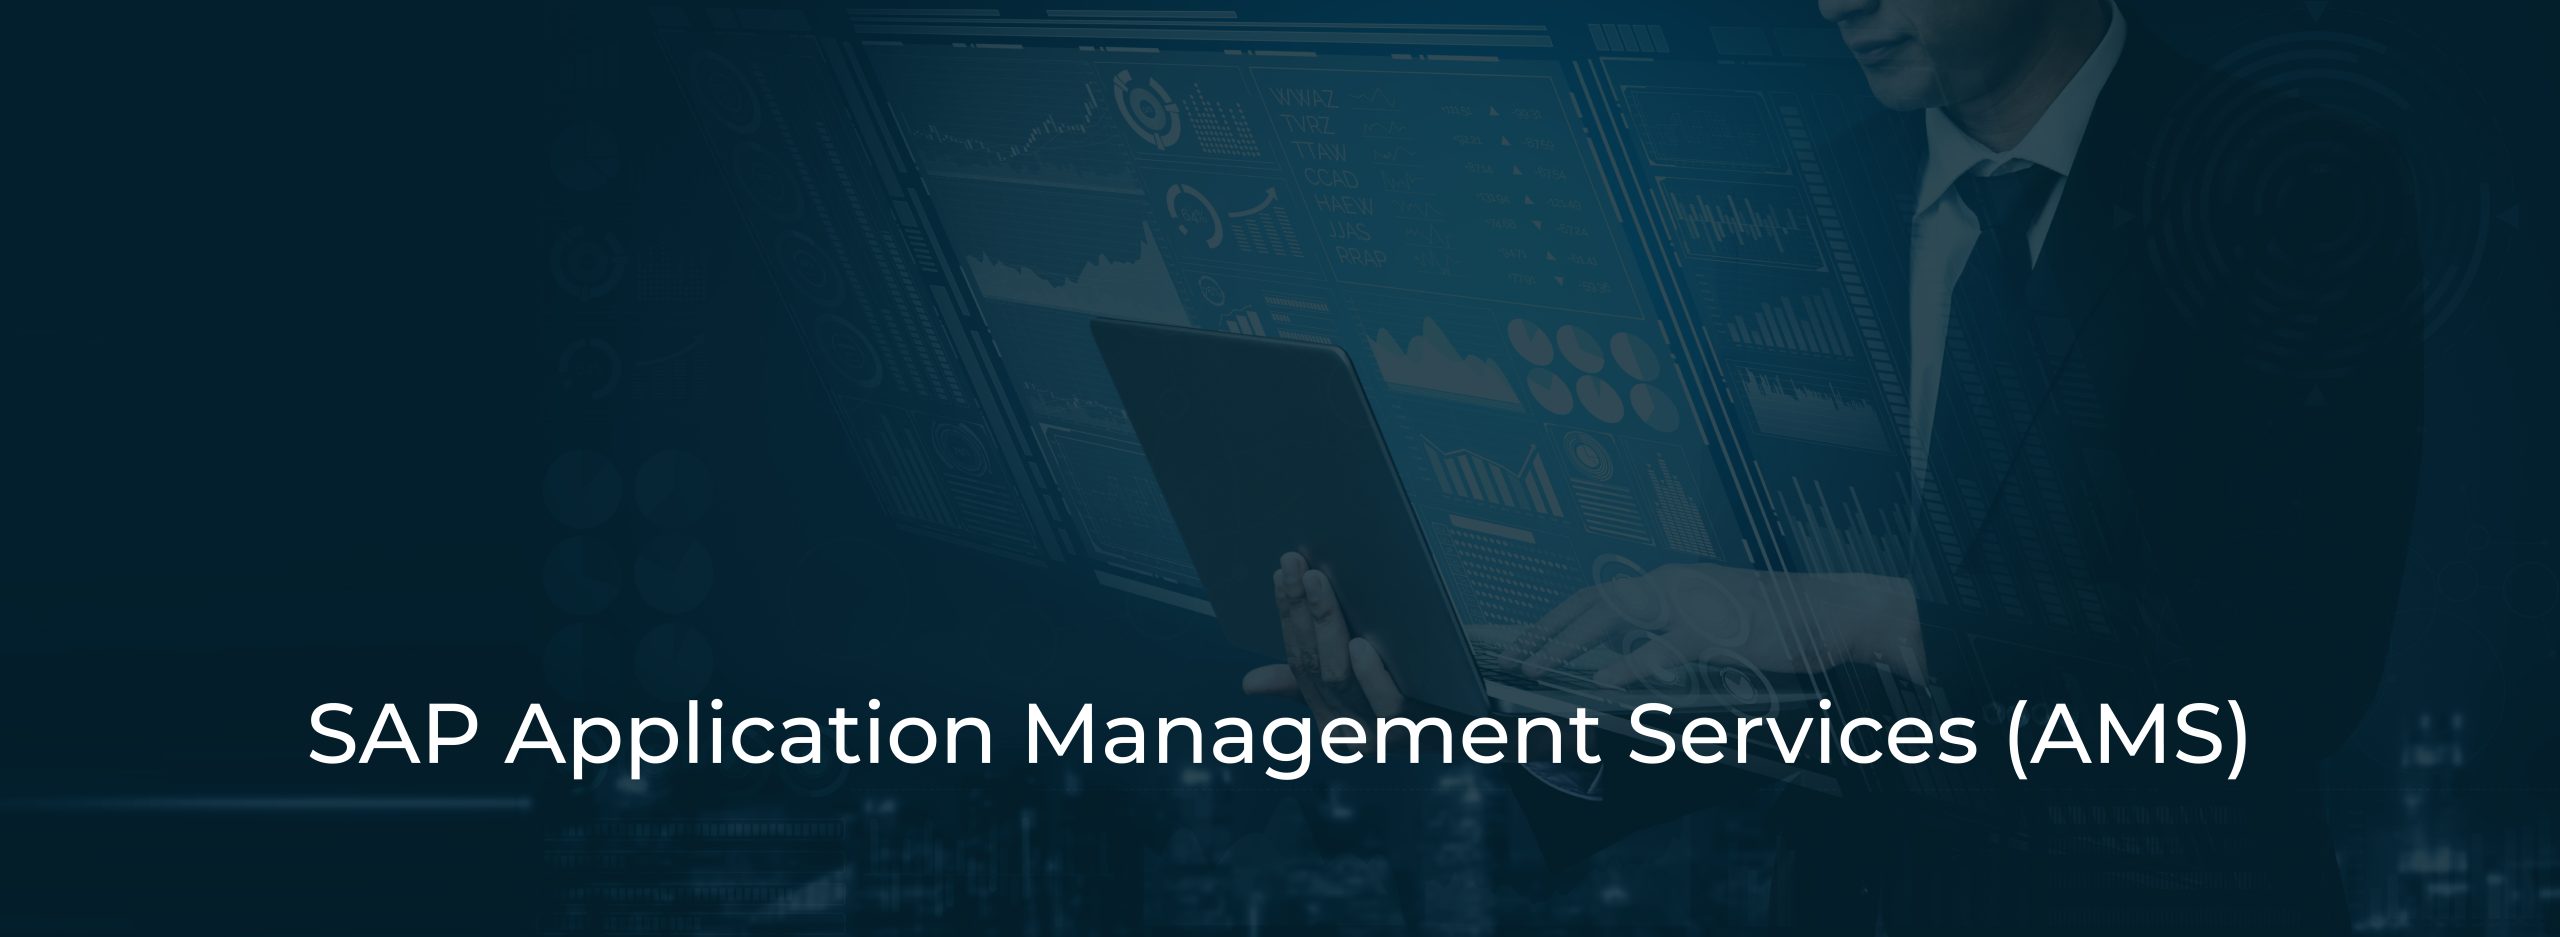 SAP Application Management Services (AMS)